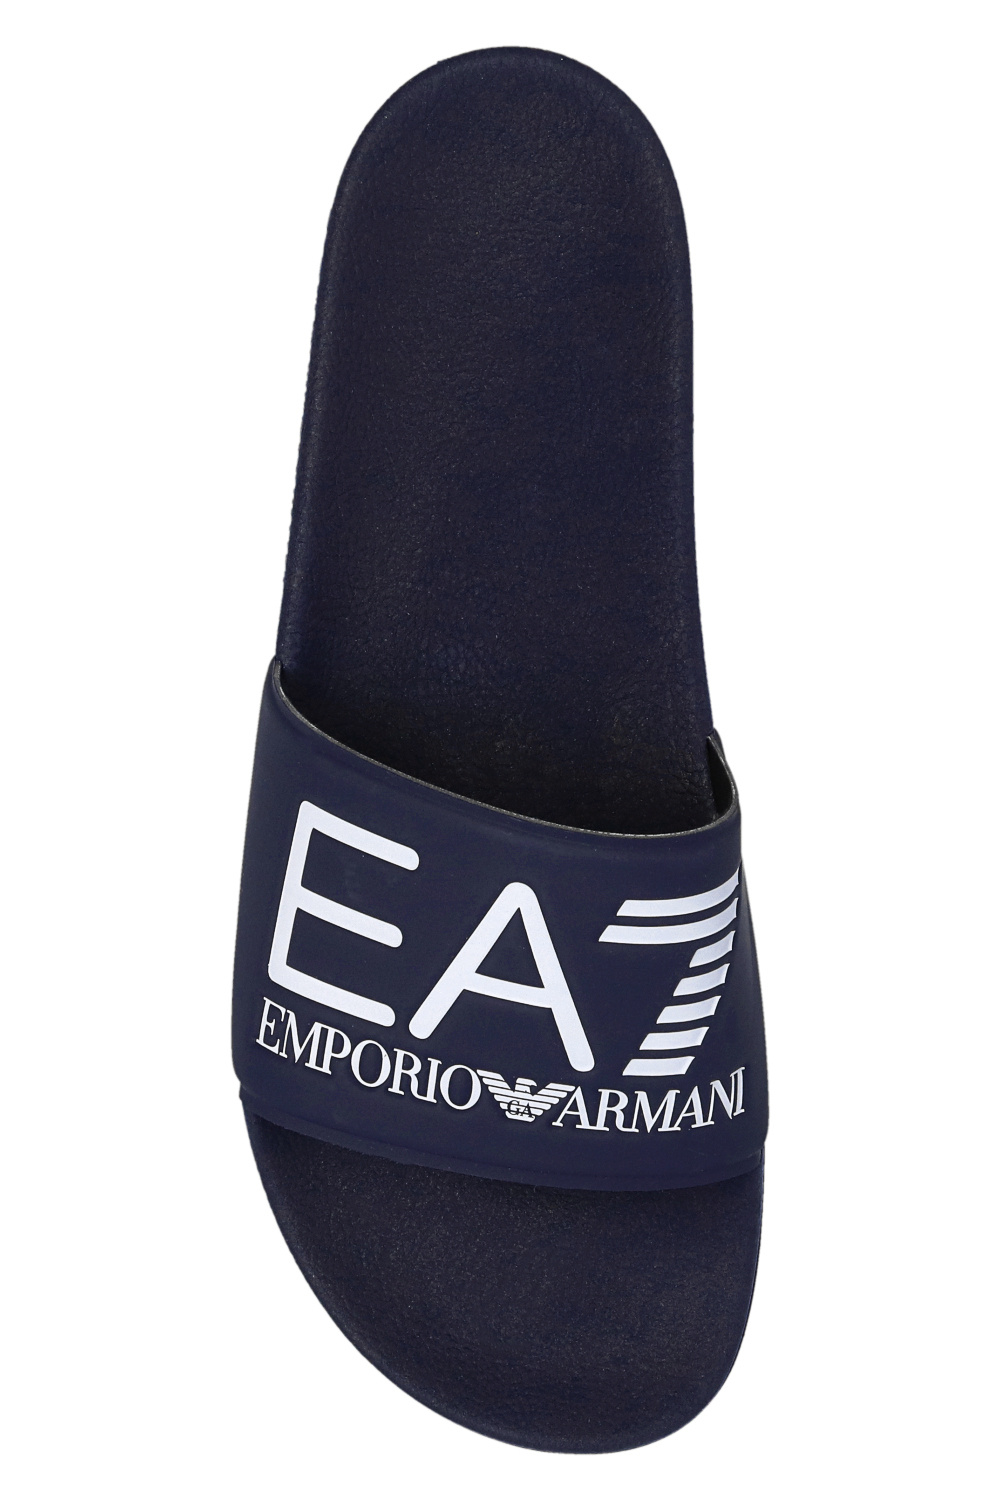 print shirt IetpShops notched-collar Men\'s Armani Armani Emporio | - Giorgio zigzag Armani Shoes - double-breasted Blau | blazer Emporio EA7